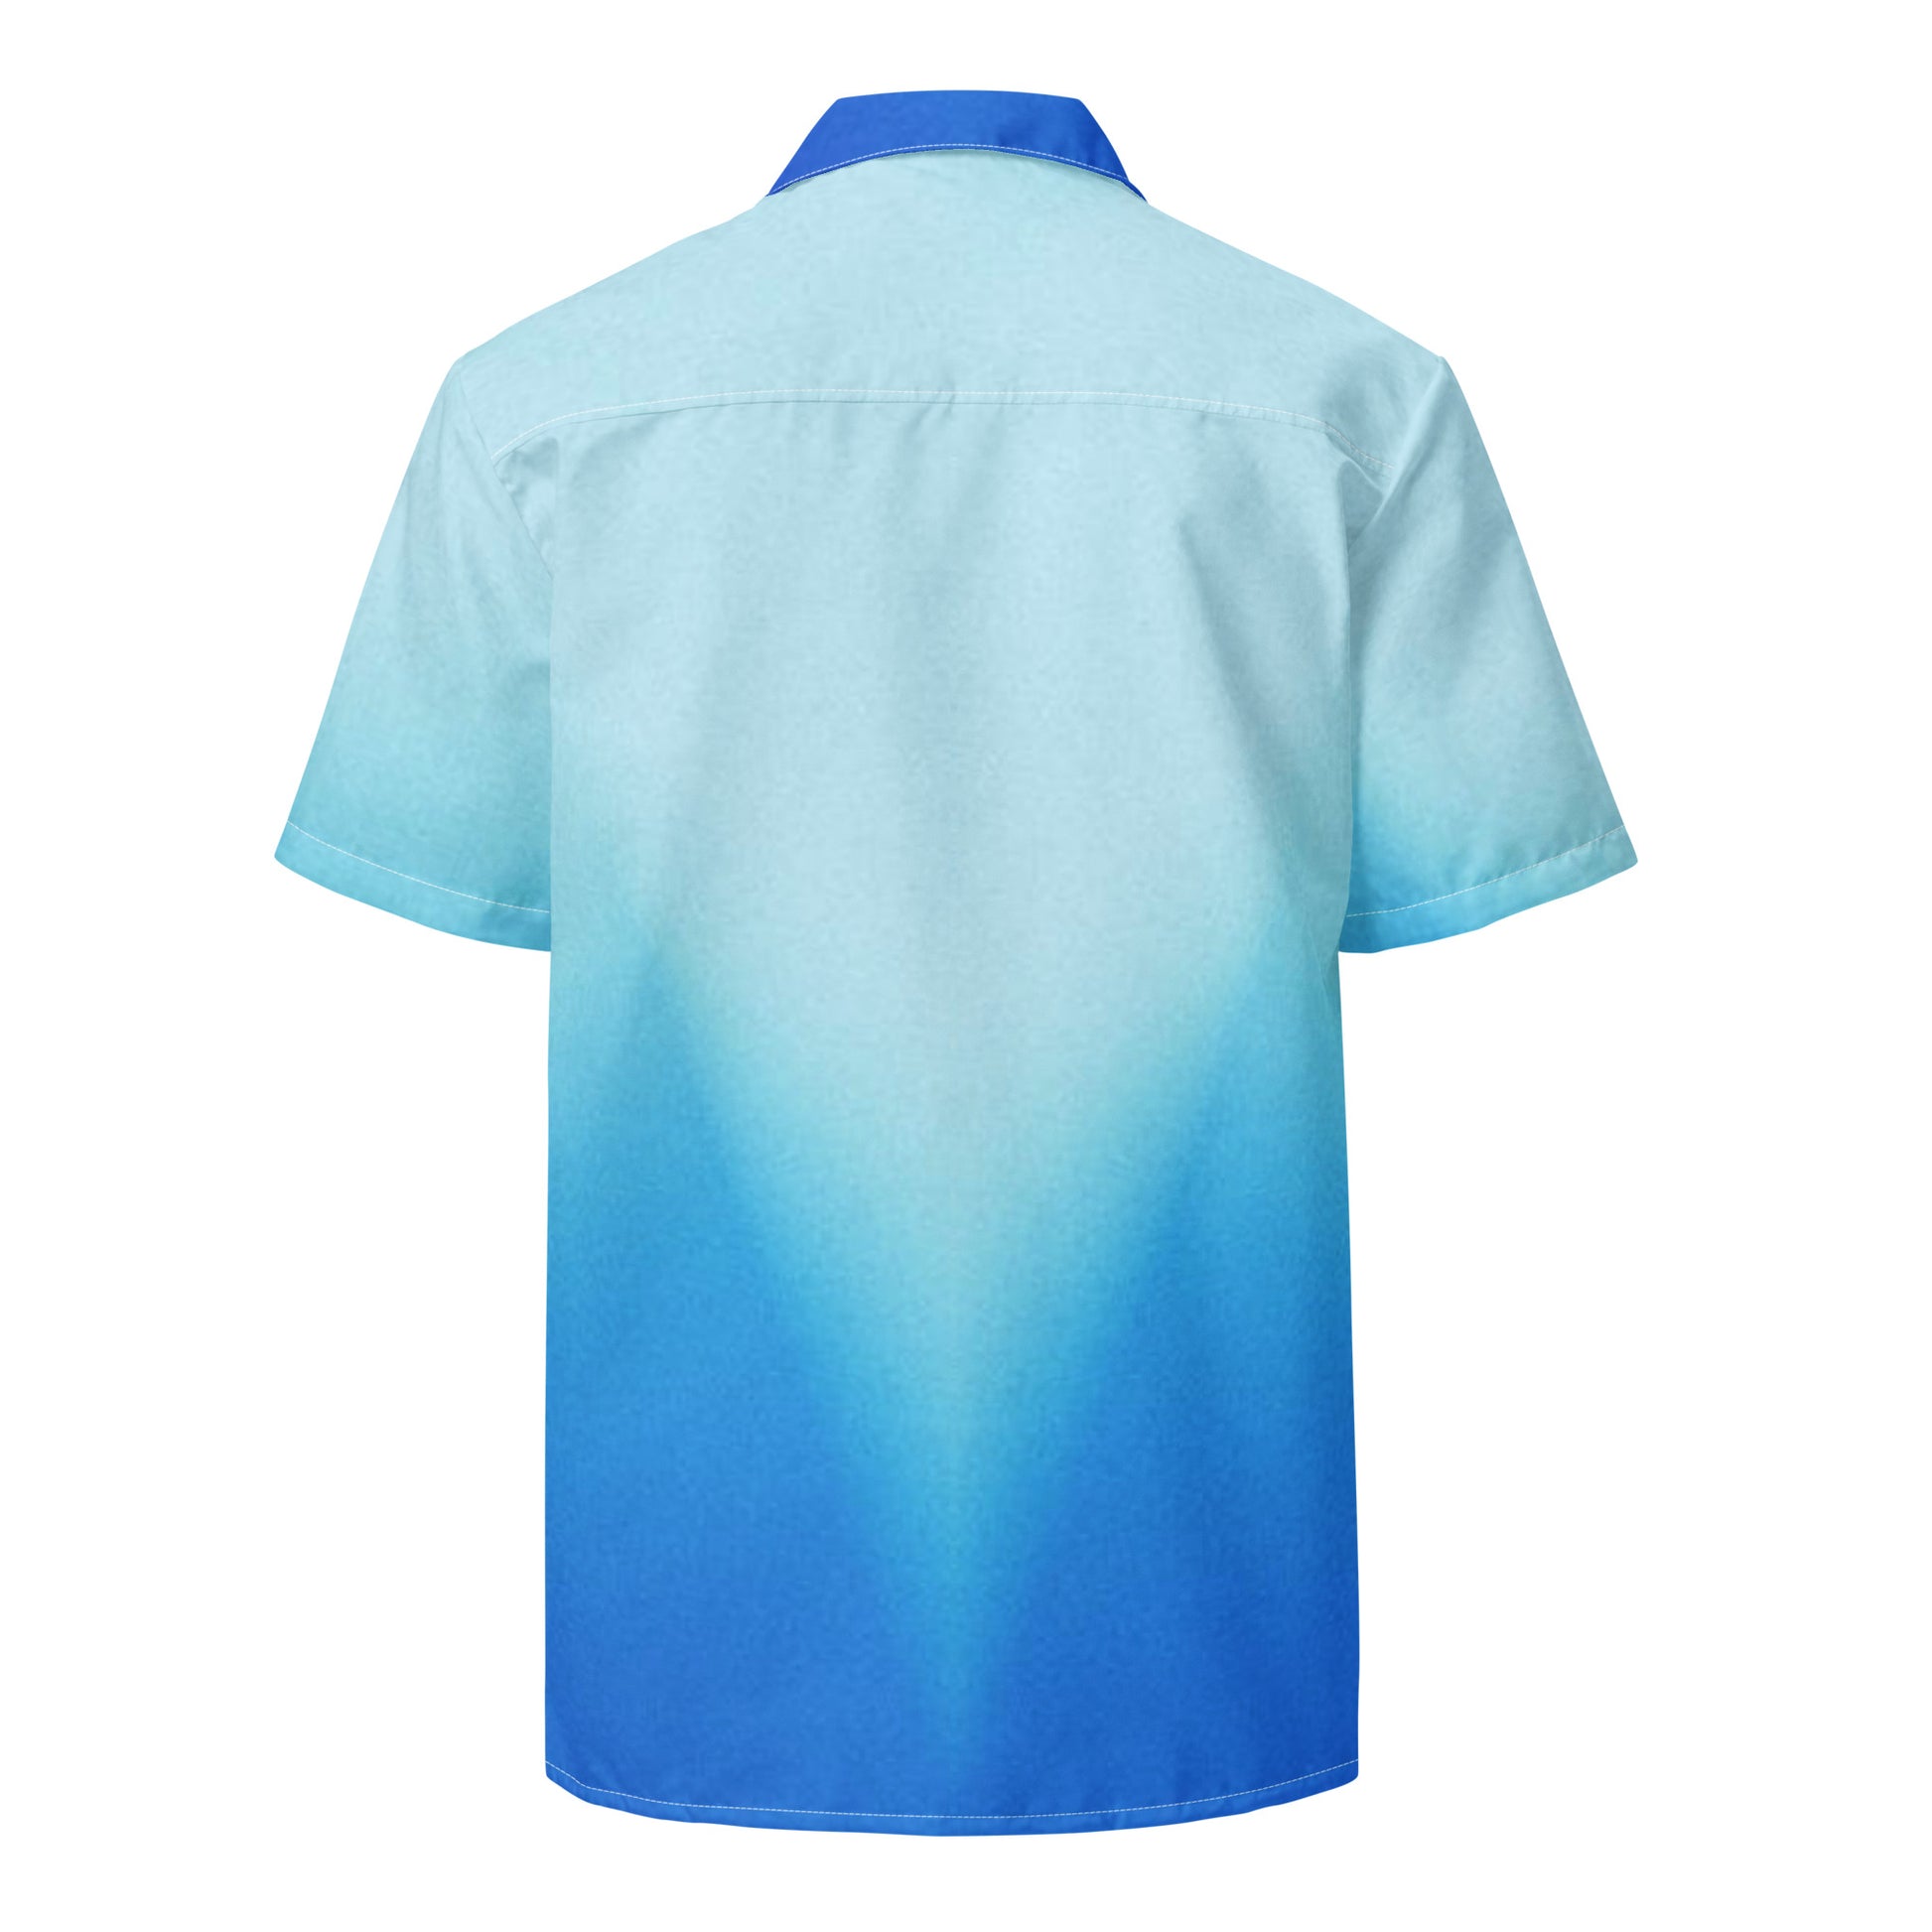 Humble Sportswear, men's button shirt, blue gradient breathable beach button down shirt